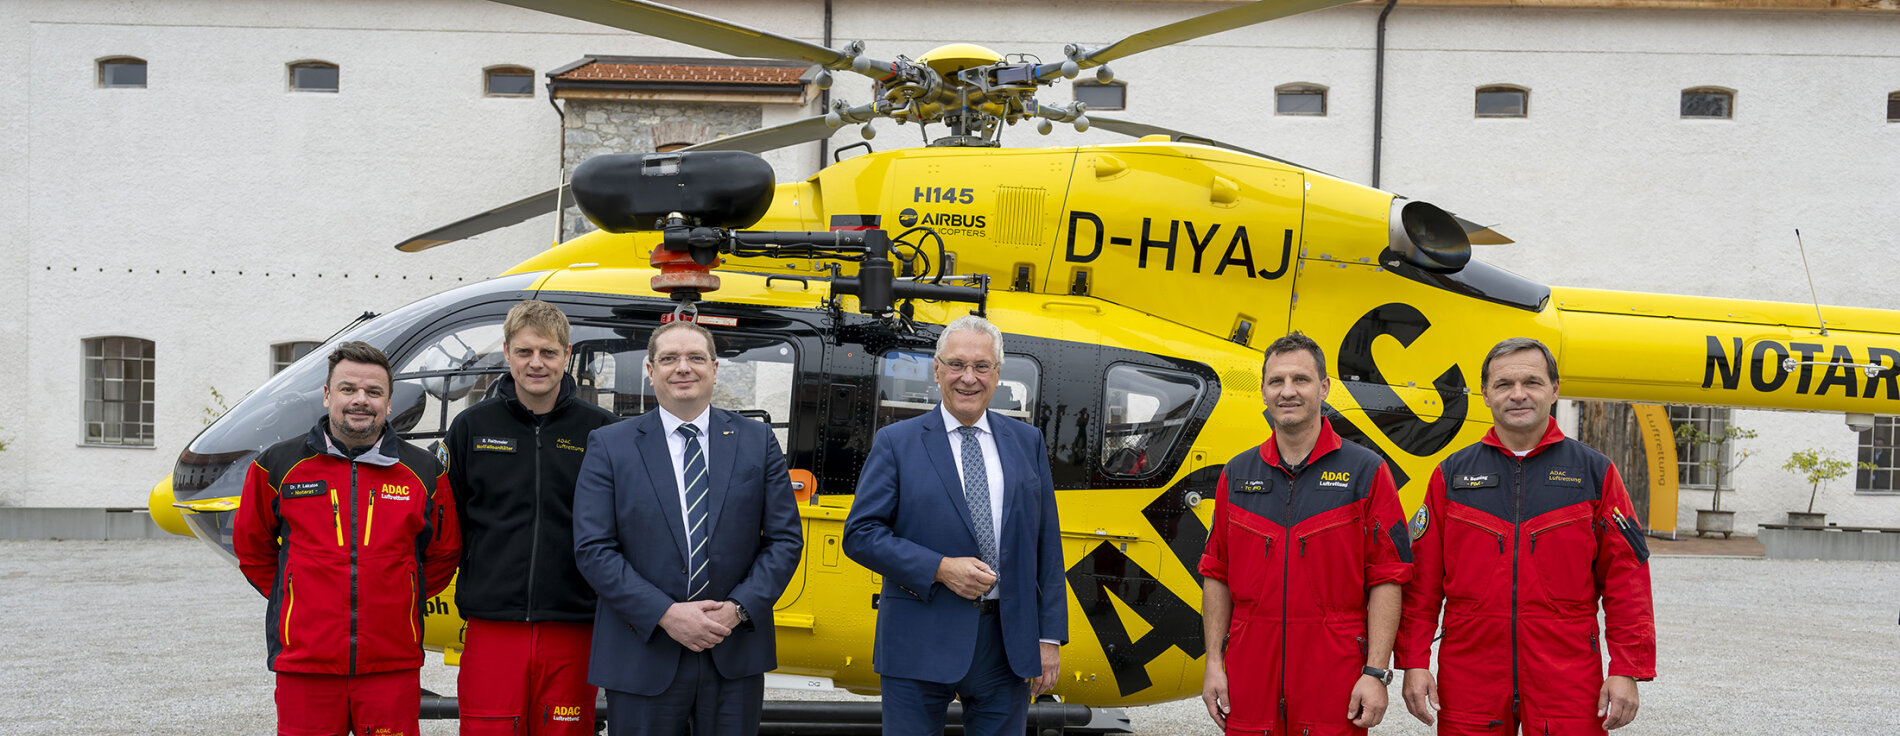 Herrmann und Vertreter der ADAC Luftrettung und Piloten vor Hubschrauber